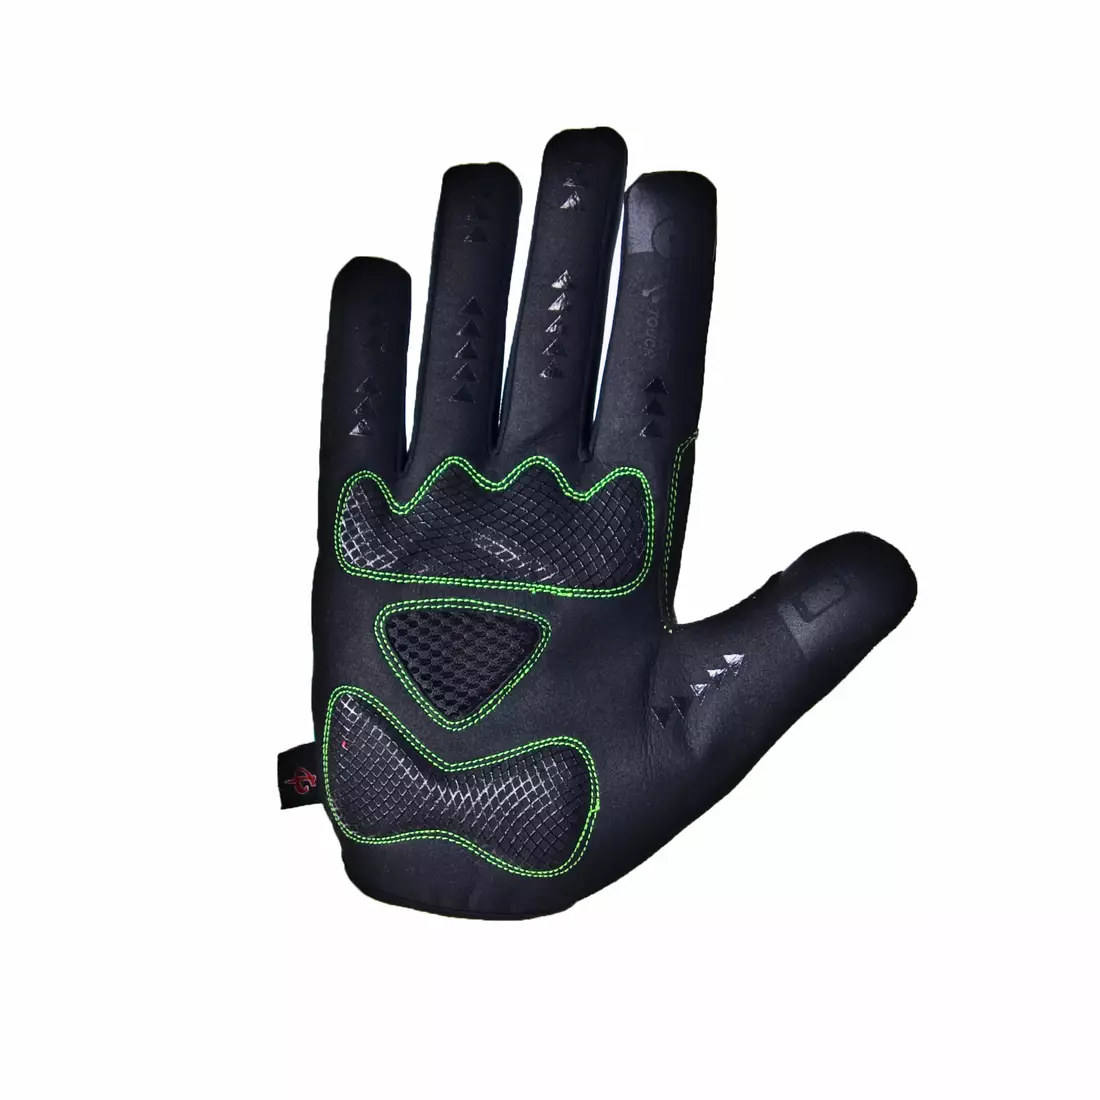 Zimní cyklistické rukavice DEKO ROST černo-fluor zelené DKWG-0715-006A